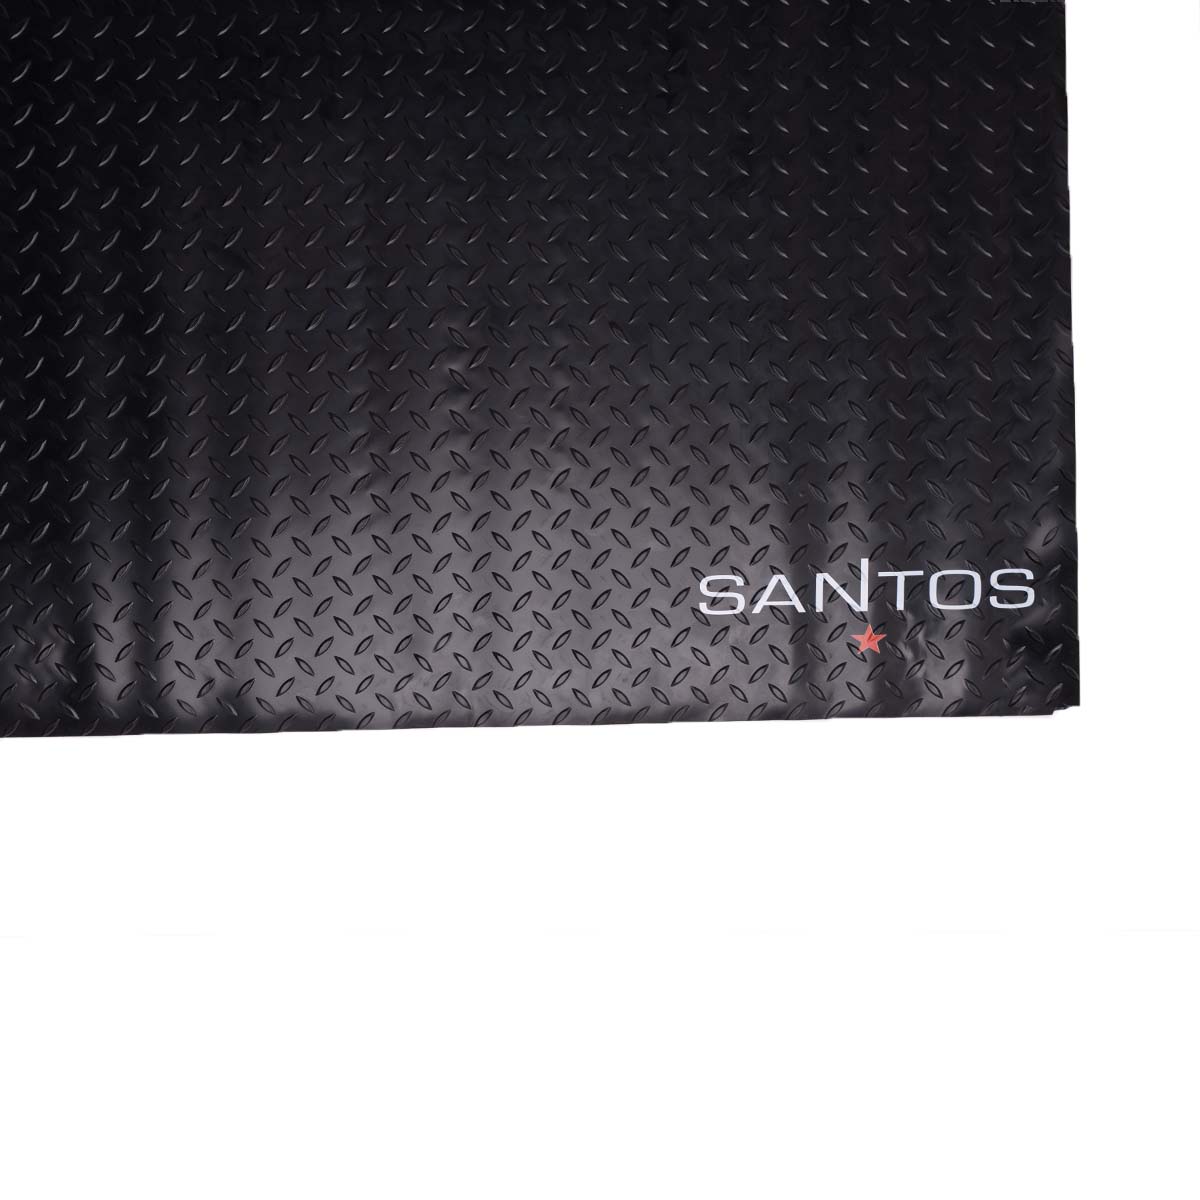 SANTOS Grillmatte Bodenschutz 190 x 100 cm